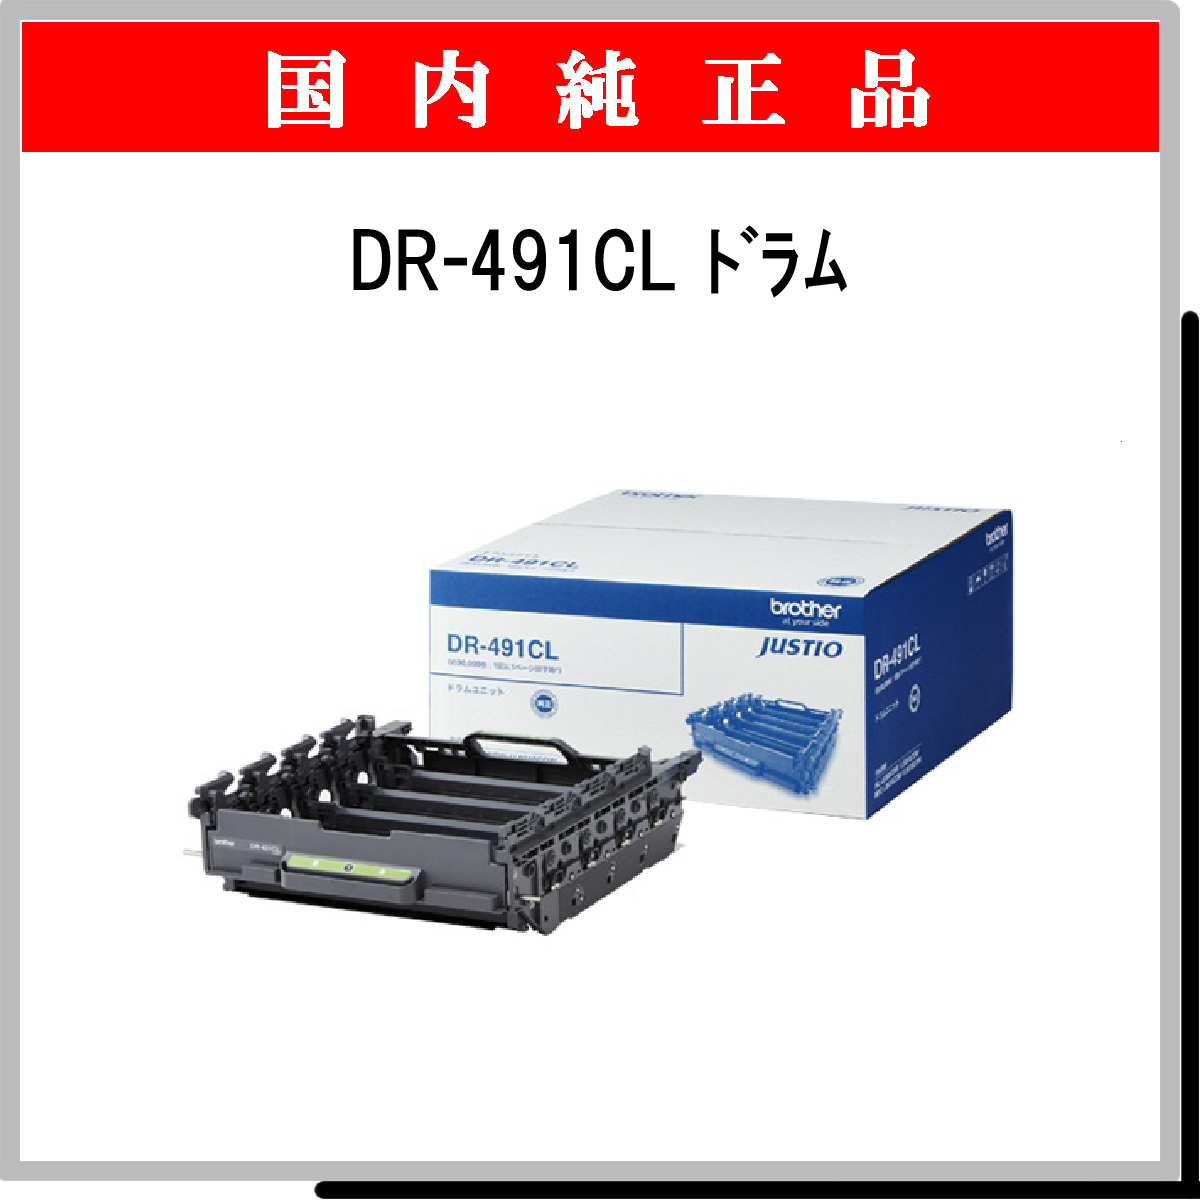 DR-491CL ﾄﾞﾗﾑ 純正